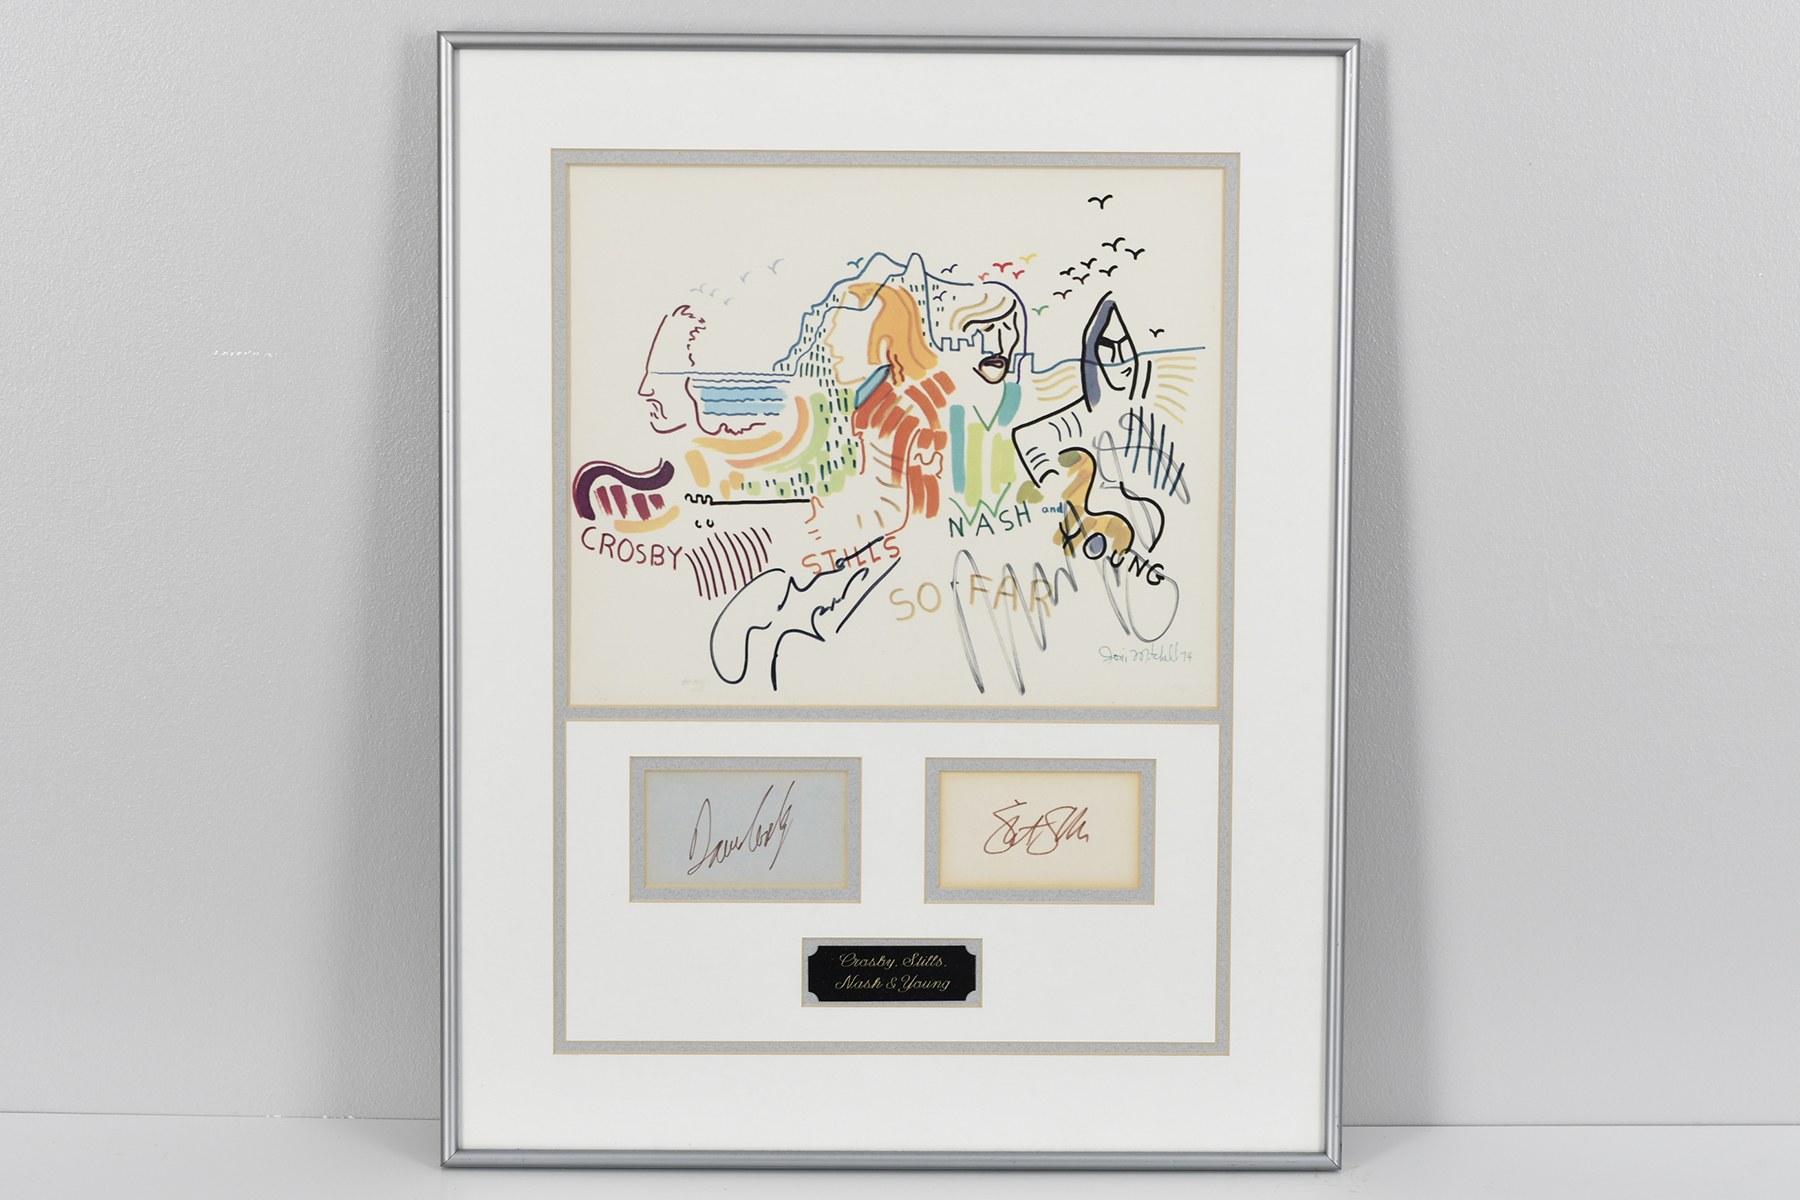 Crosby, Stills, Nash & Young Memorabilia Presentation with Original Signatures. - Image 4 of 4